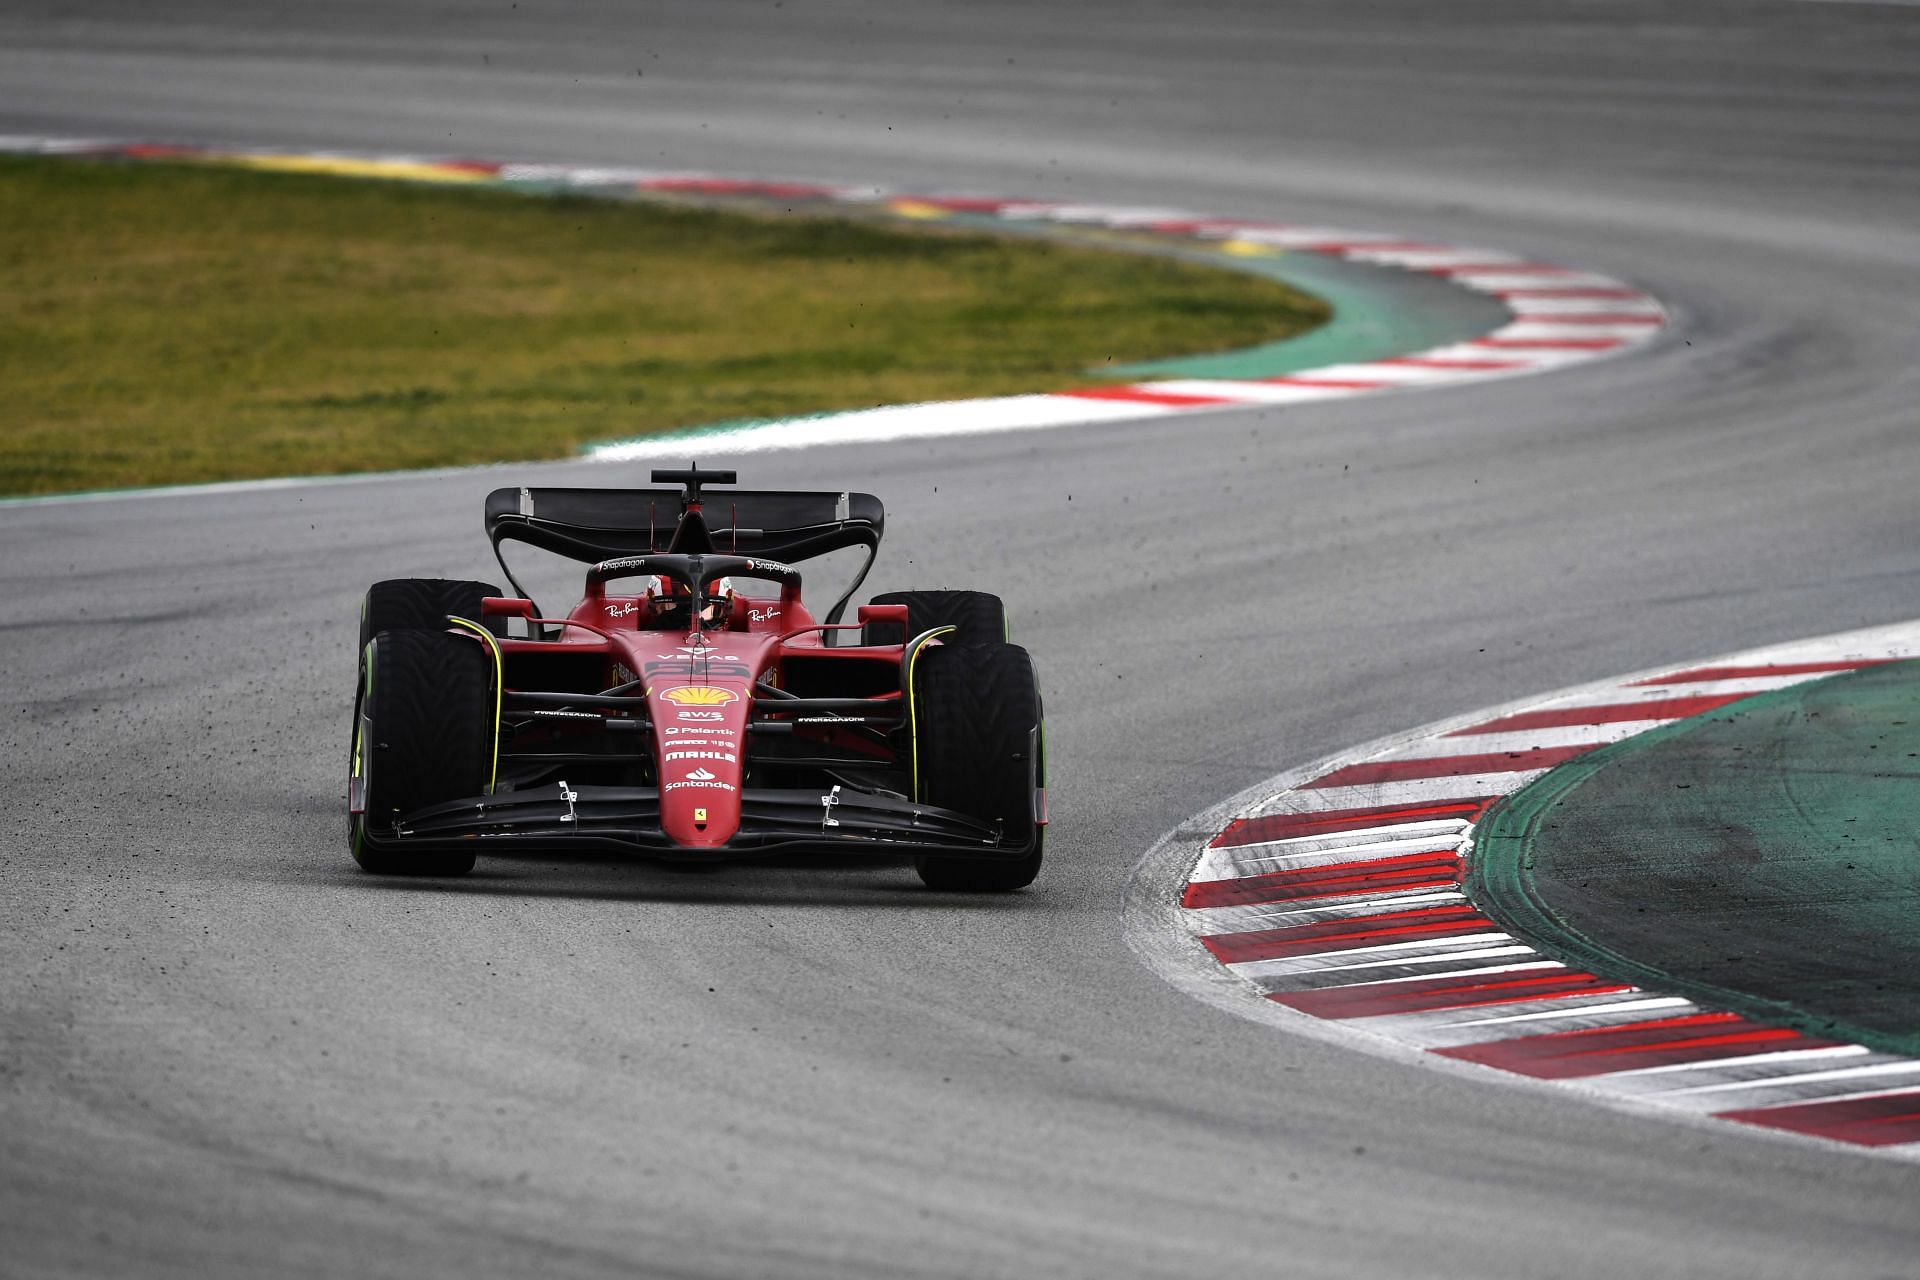 How will the new upgrades fare for Ferrari?